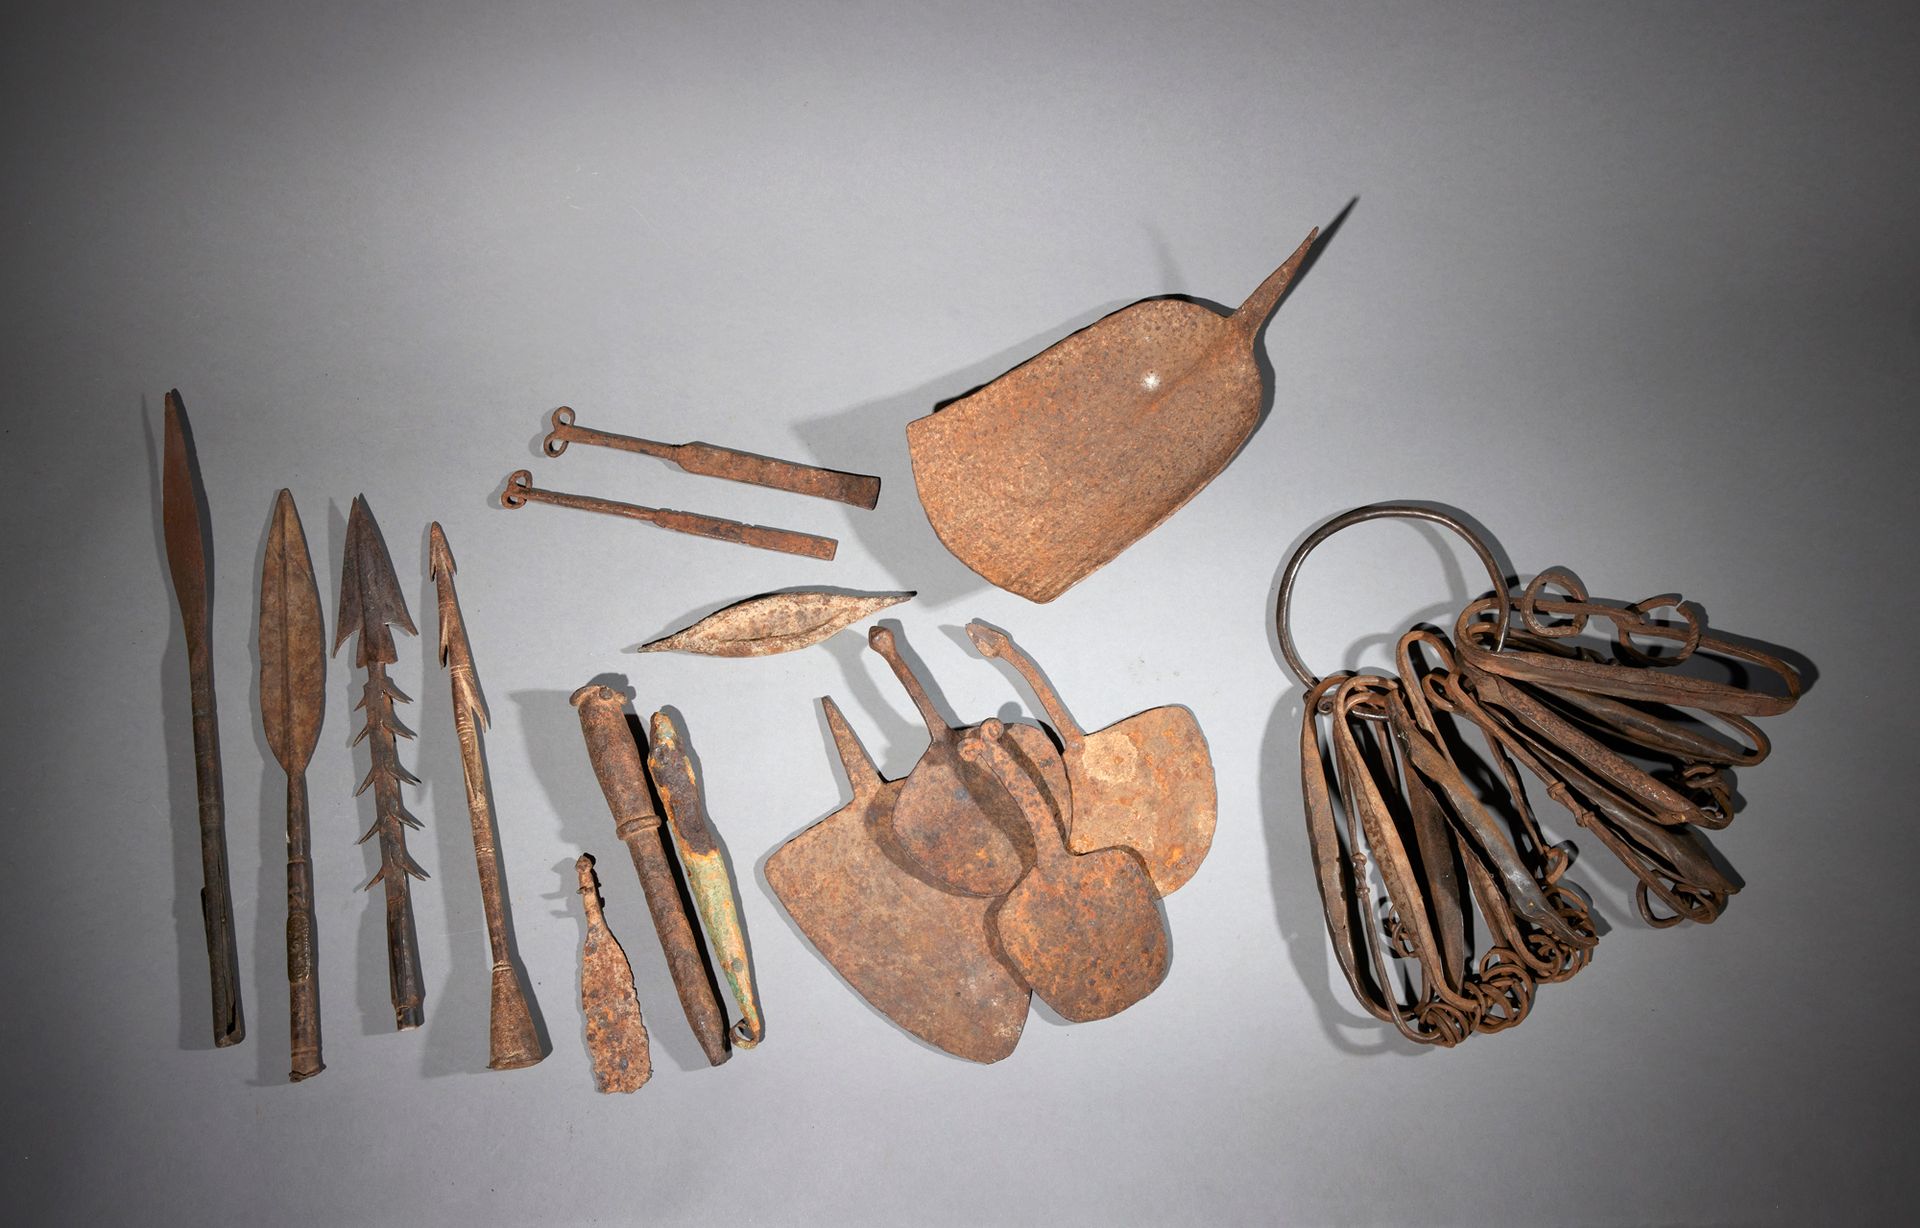 Null 六件人工制品

西非

铁

D. 变量



一套六件铁制工艺品，包括两枚硬币（尼日利亚）、四个矛头和四个Kirdi硬币（喀麦隆）。